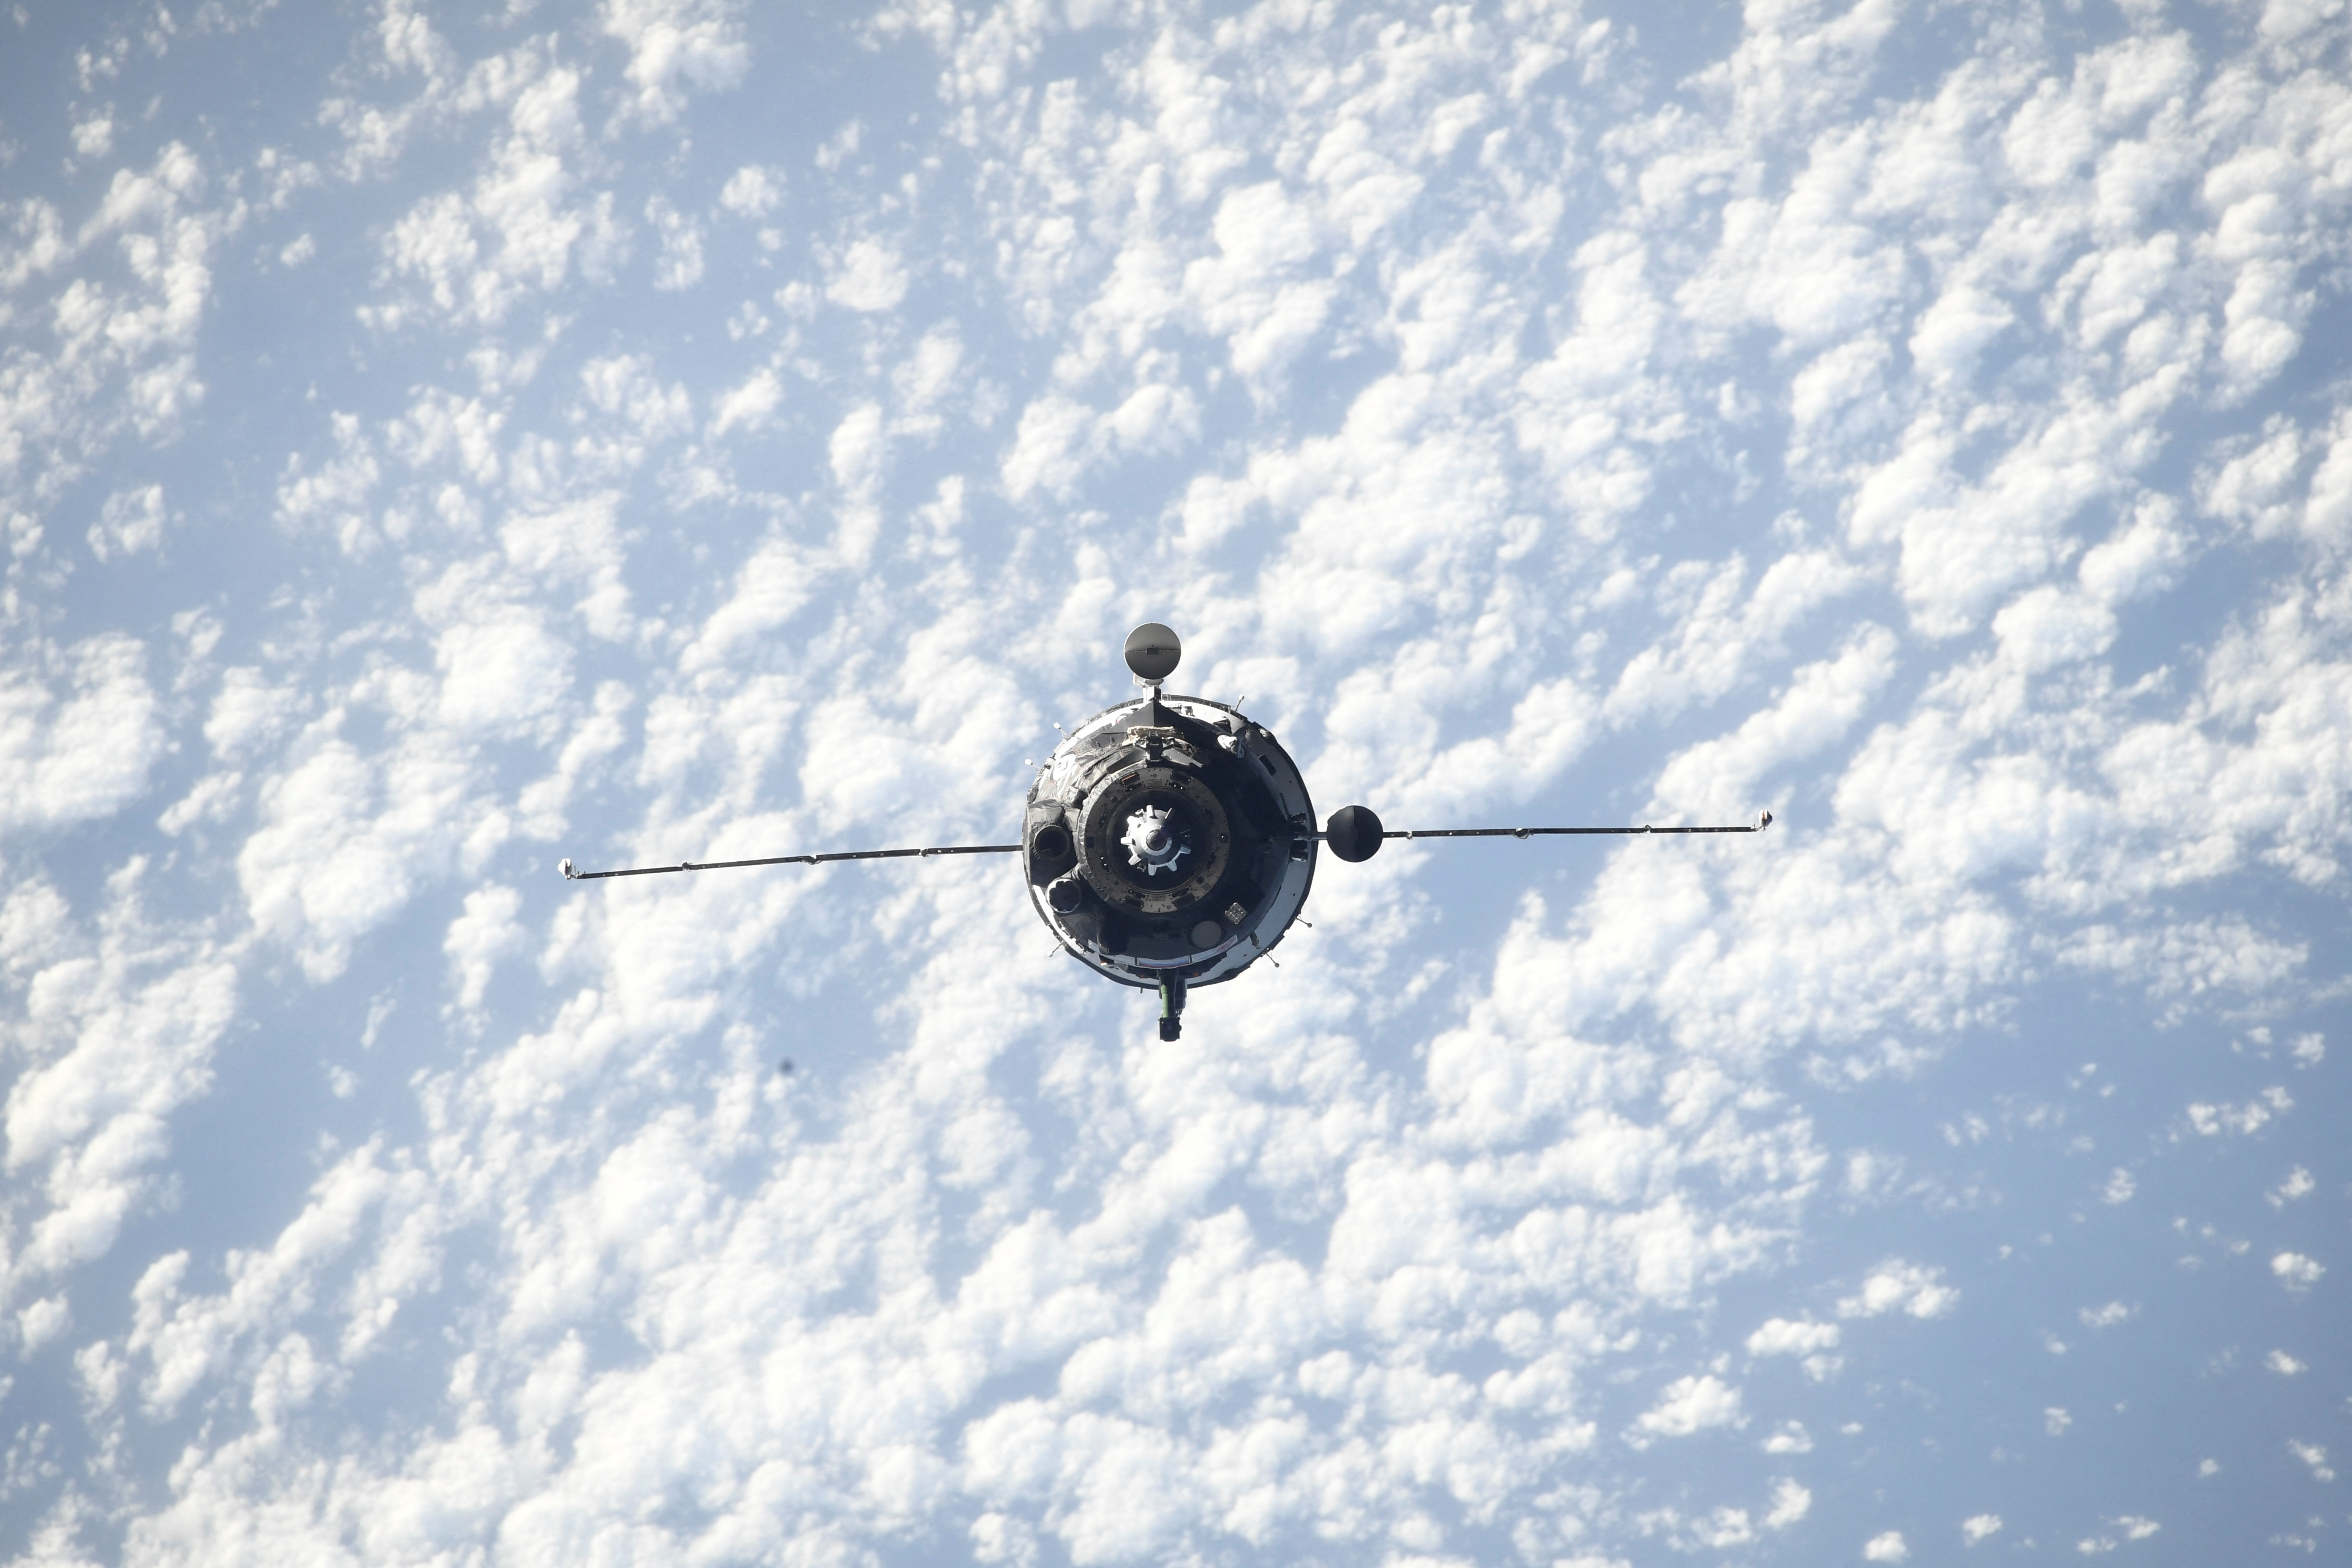 La nave espacial Soyuz MS-21 que transporta a los cosmonautas rusos Oleg Artemyev, Denis Matveev y Sergey Korsakov es vista durante su acoplamiento a la Estación Espacial Internacional (ISS) el 18 de marzo de 2022 (Anton Shkaplerov/Roscosmos/vía REUTERS)